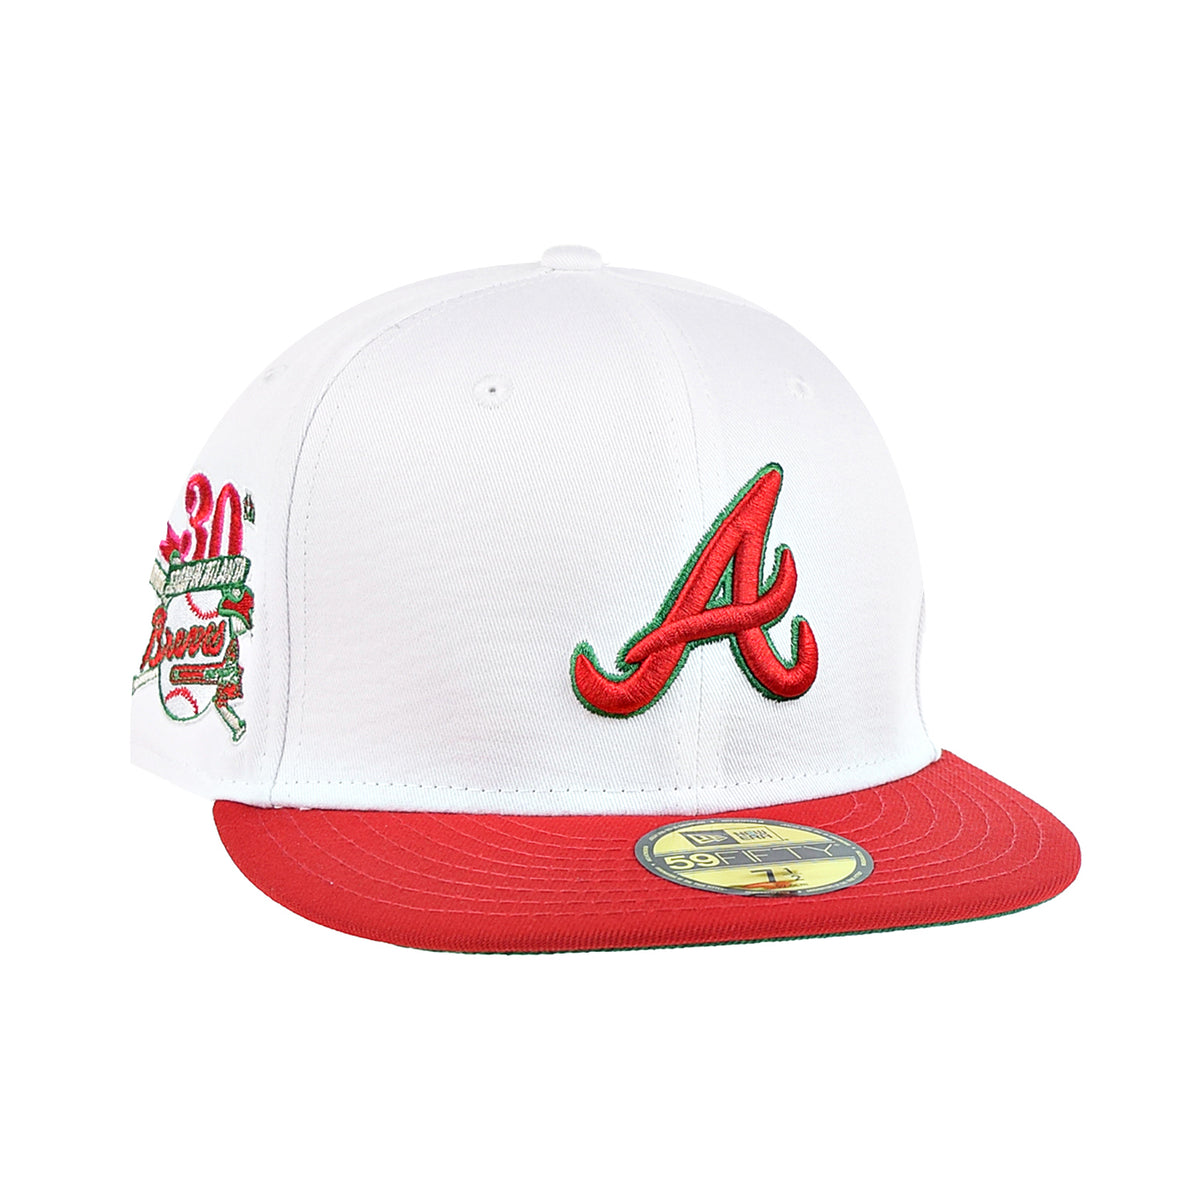 Atlanta braves new era hat